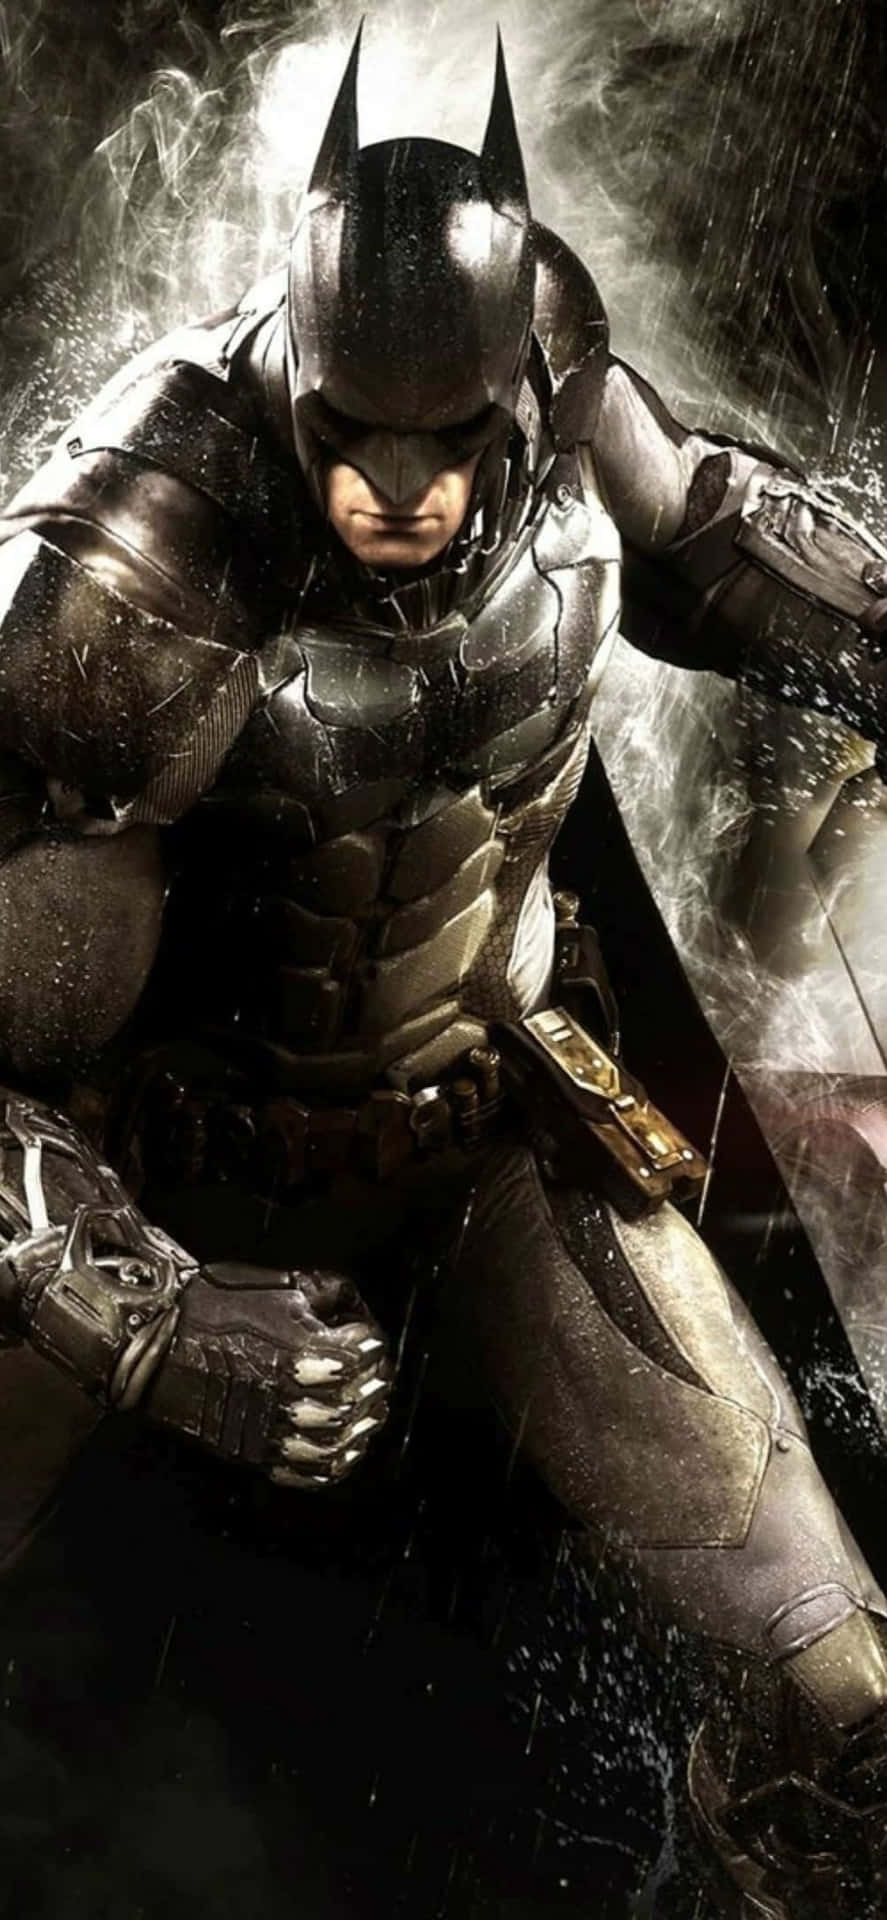 The Dark Knight Rises in Batman: Arkham Knight Wallpaper